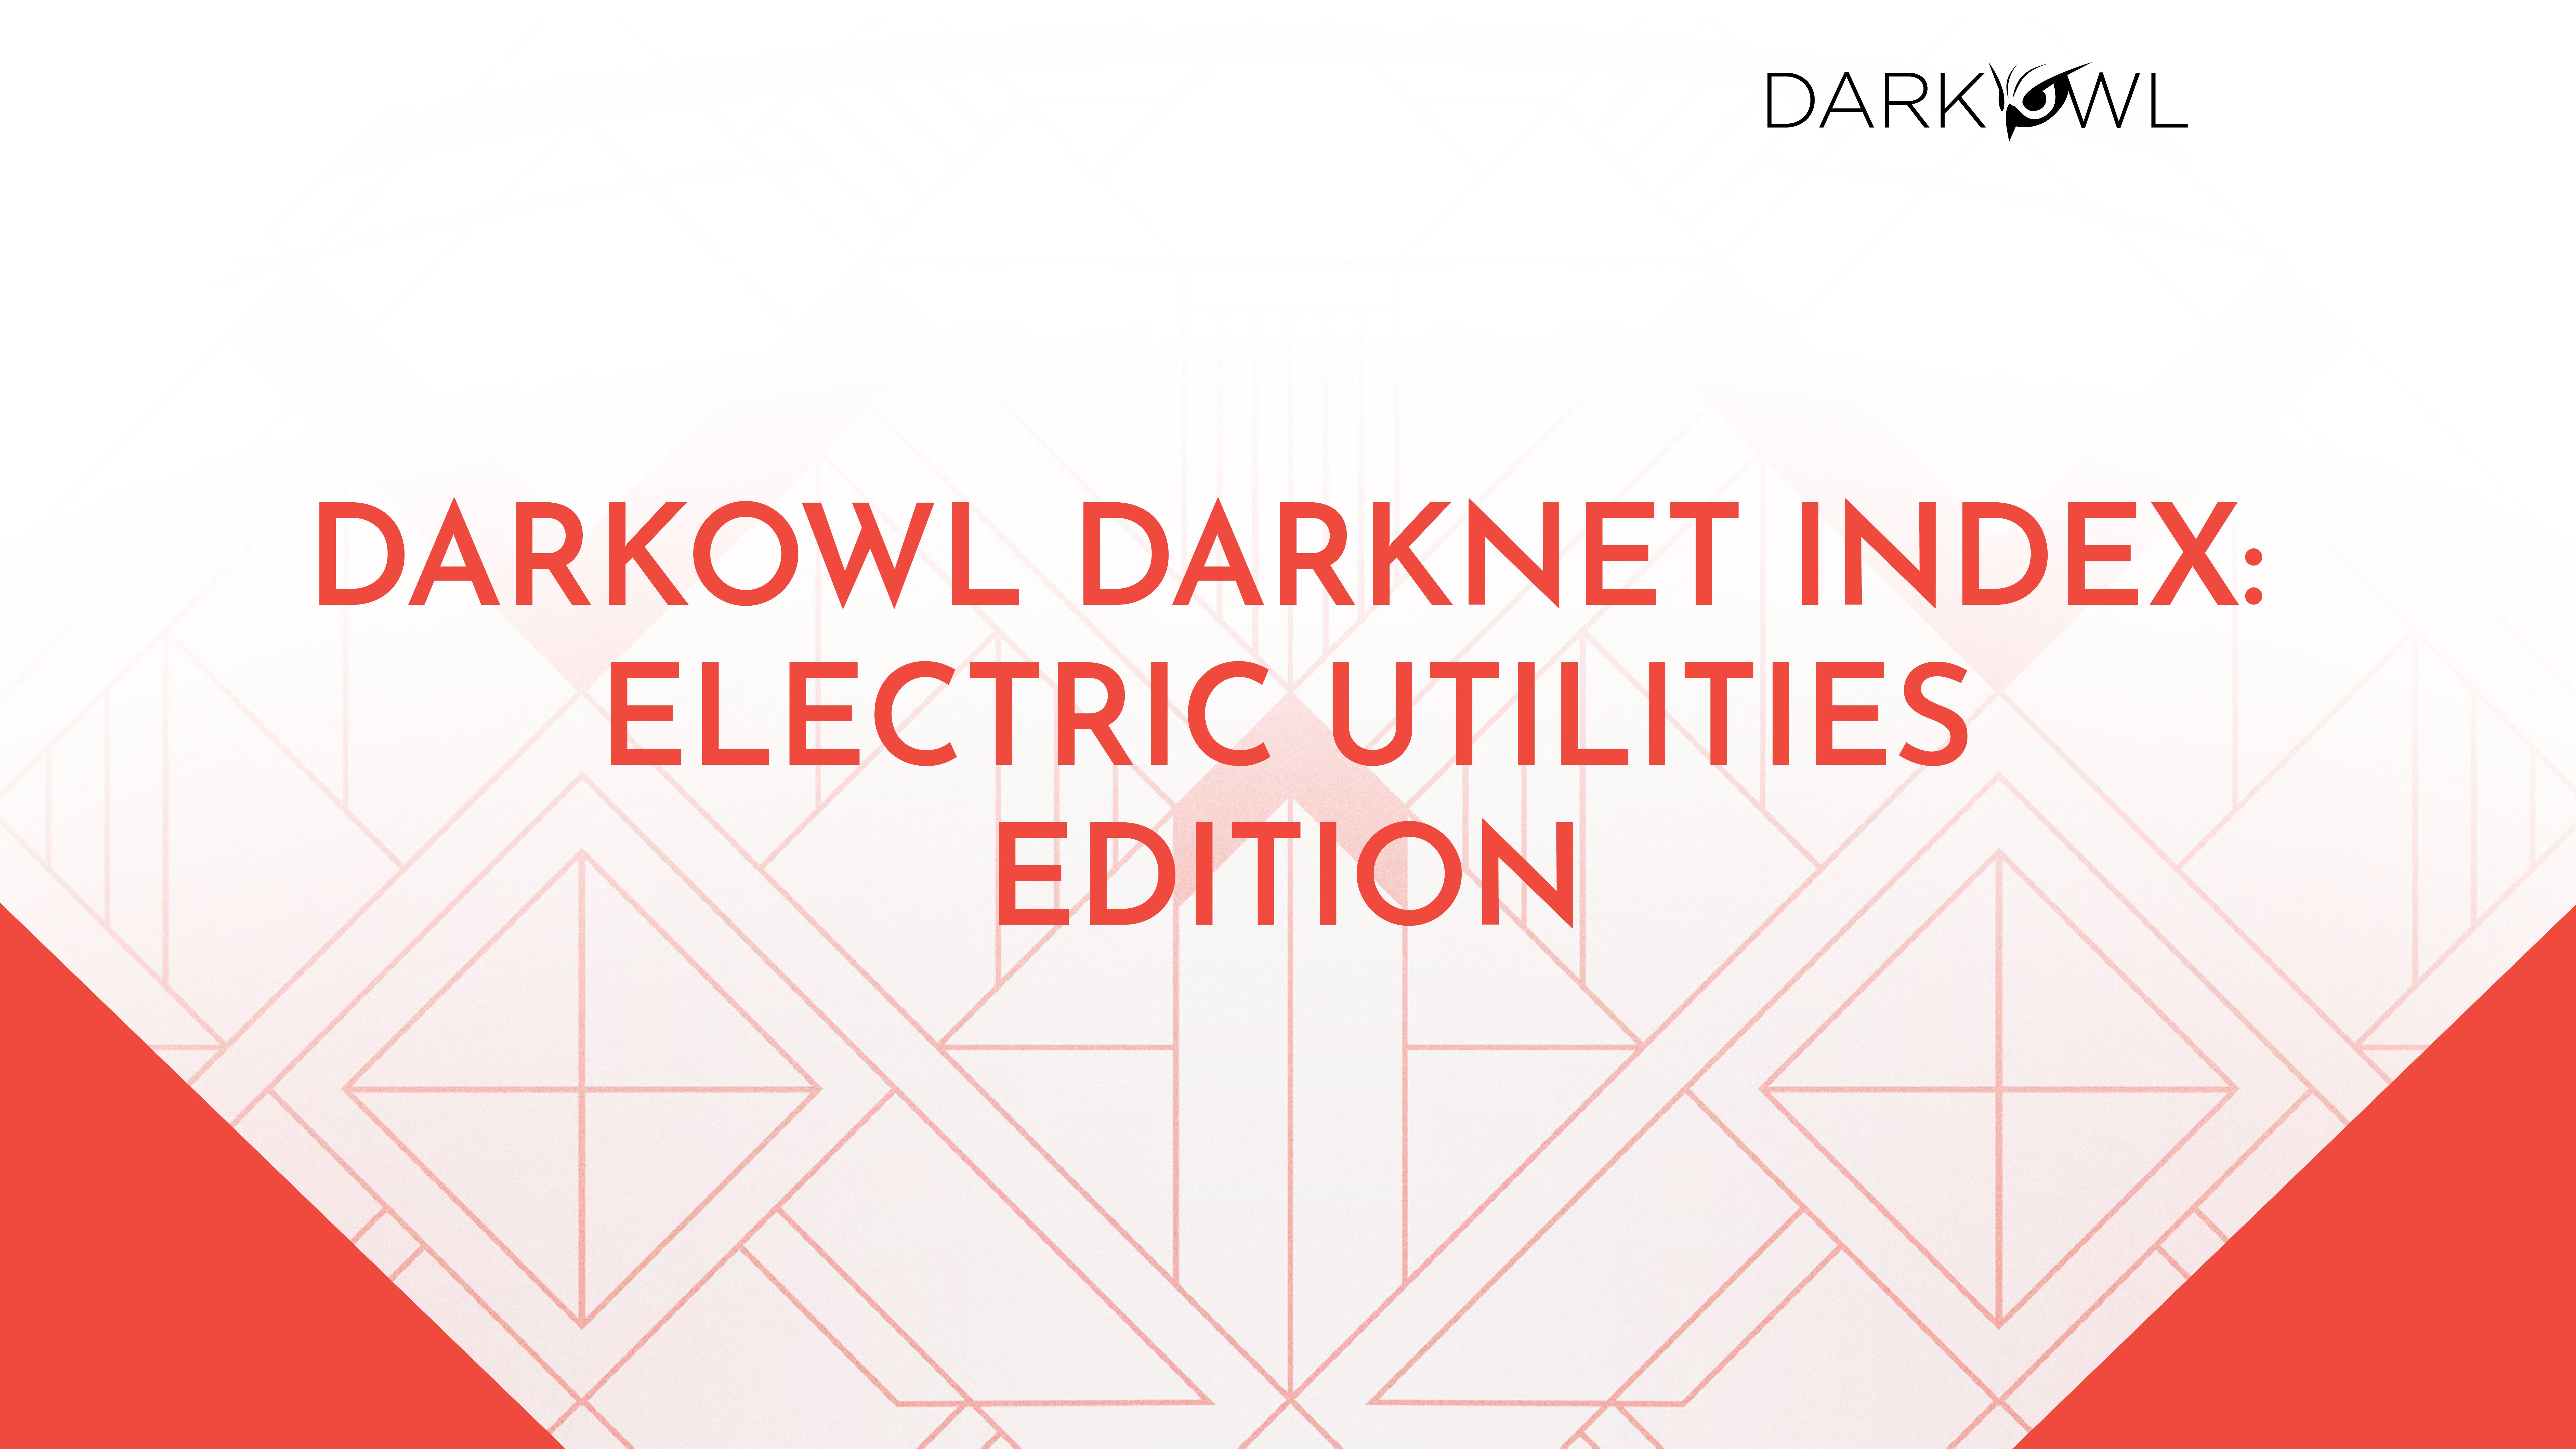 DarkOwl Content Team, Author at DarkOwl, LLC